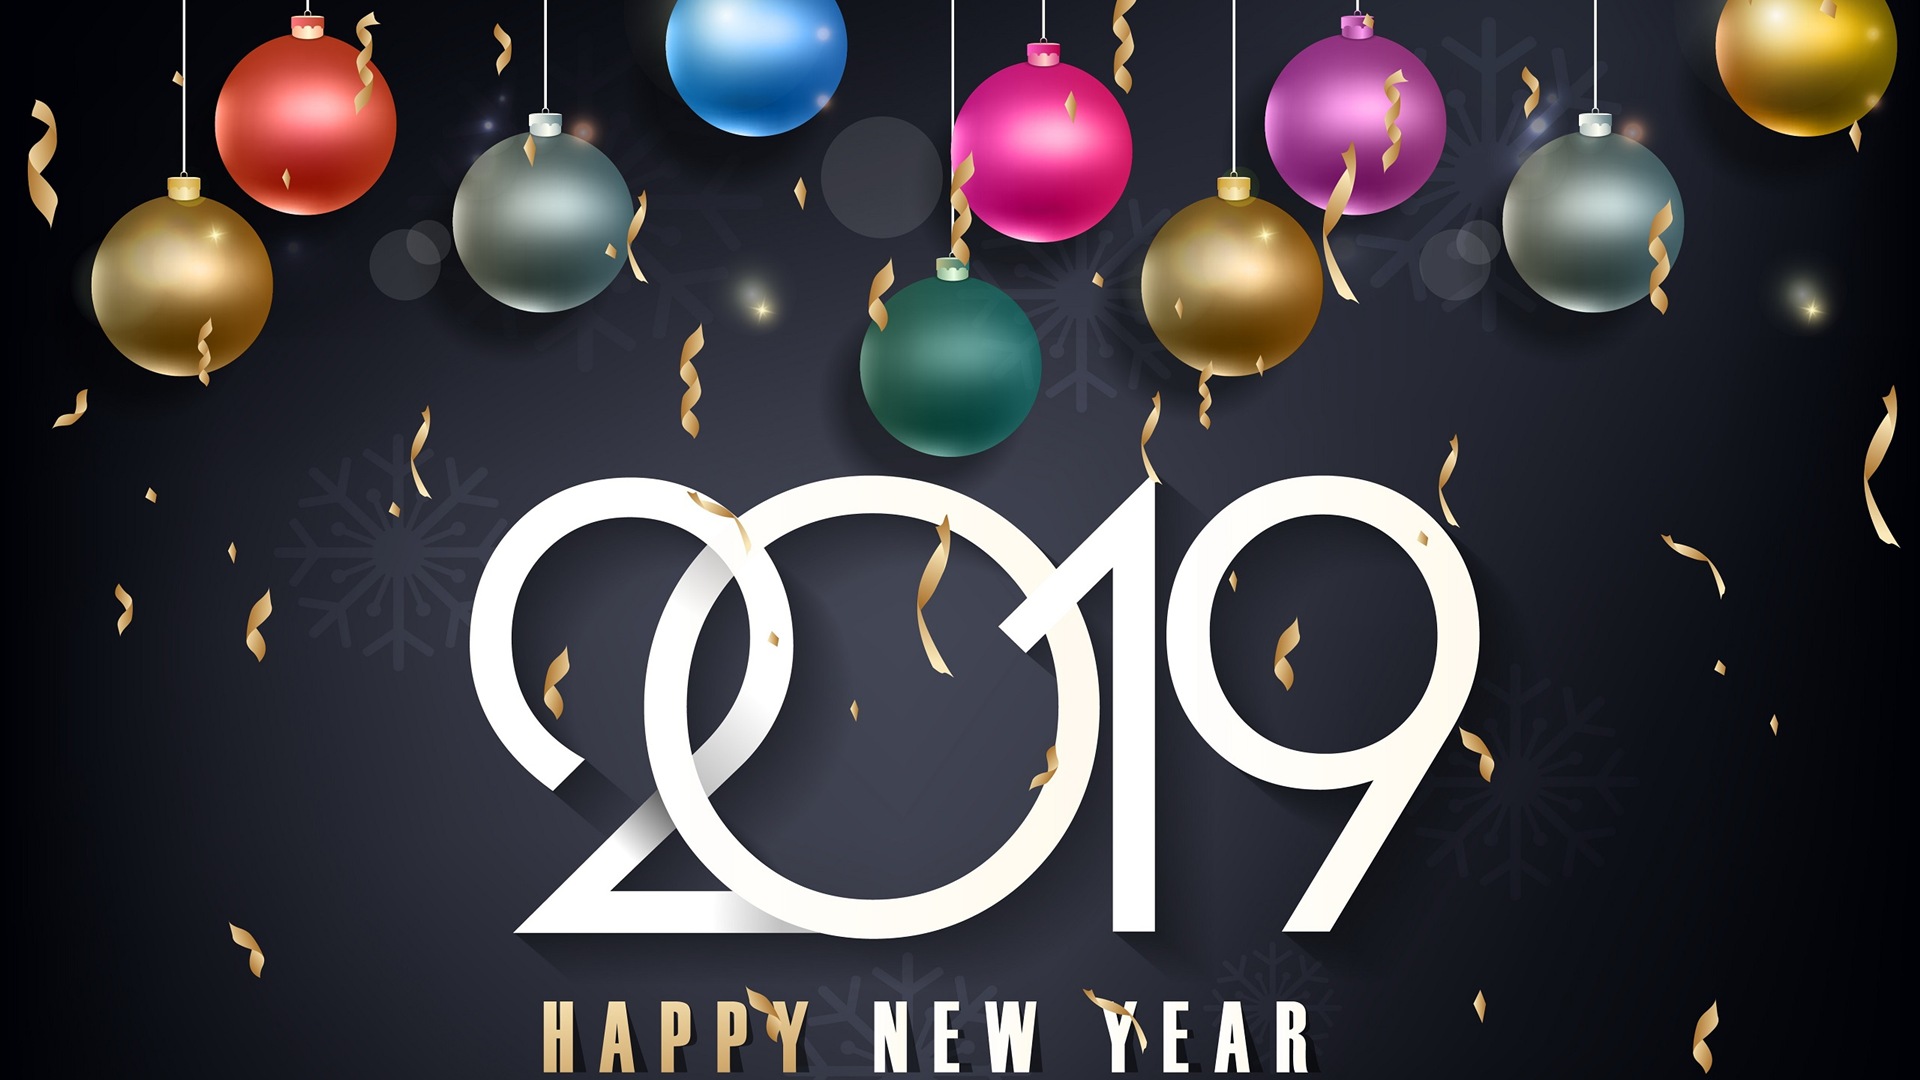 Feliz año nuevo 2019 HD wallpapers #9 - 1920x1080